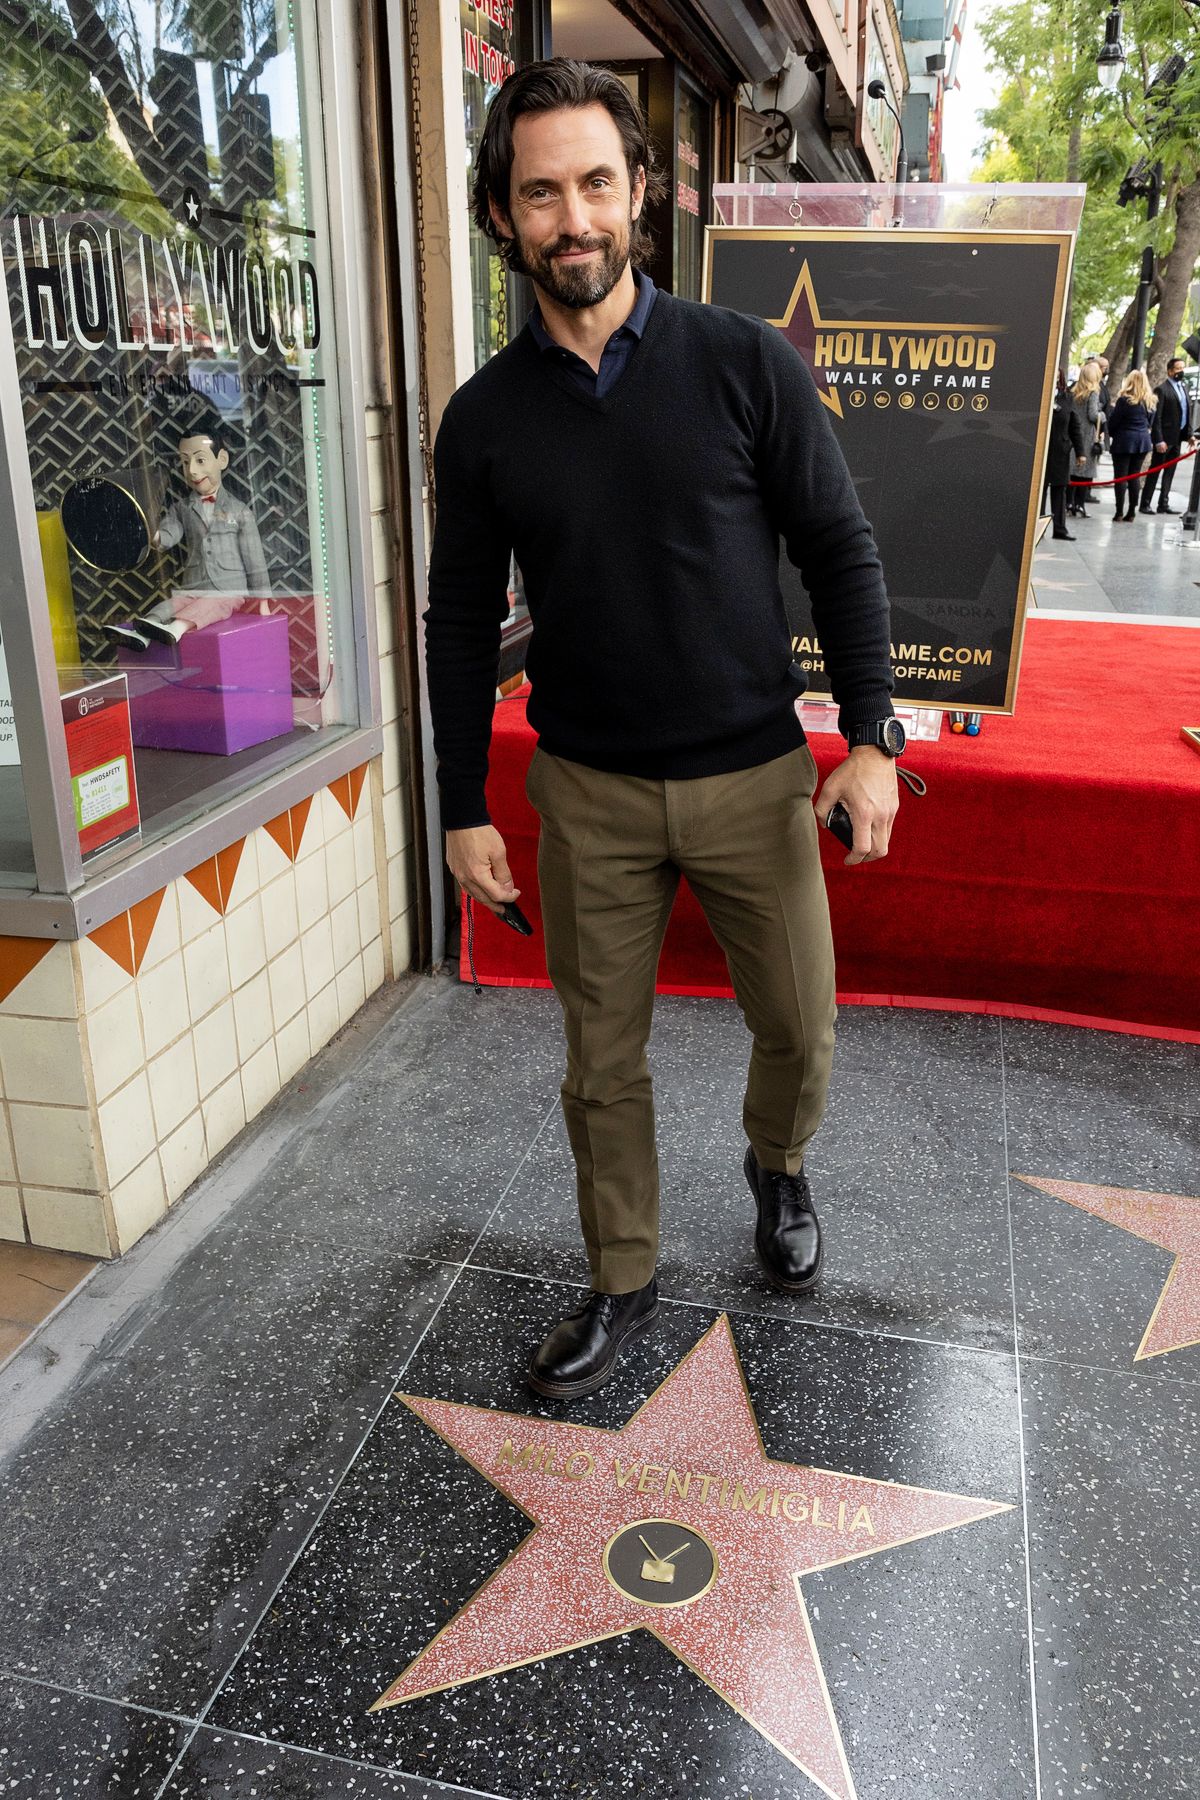 Майло Вентимилья на церемонии награждения его звездой на Голливудской Аллее славы, фото 2